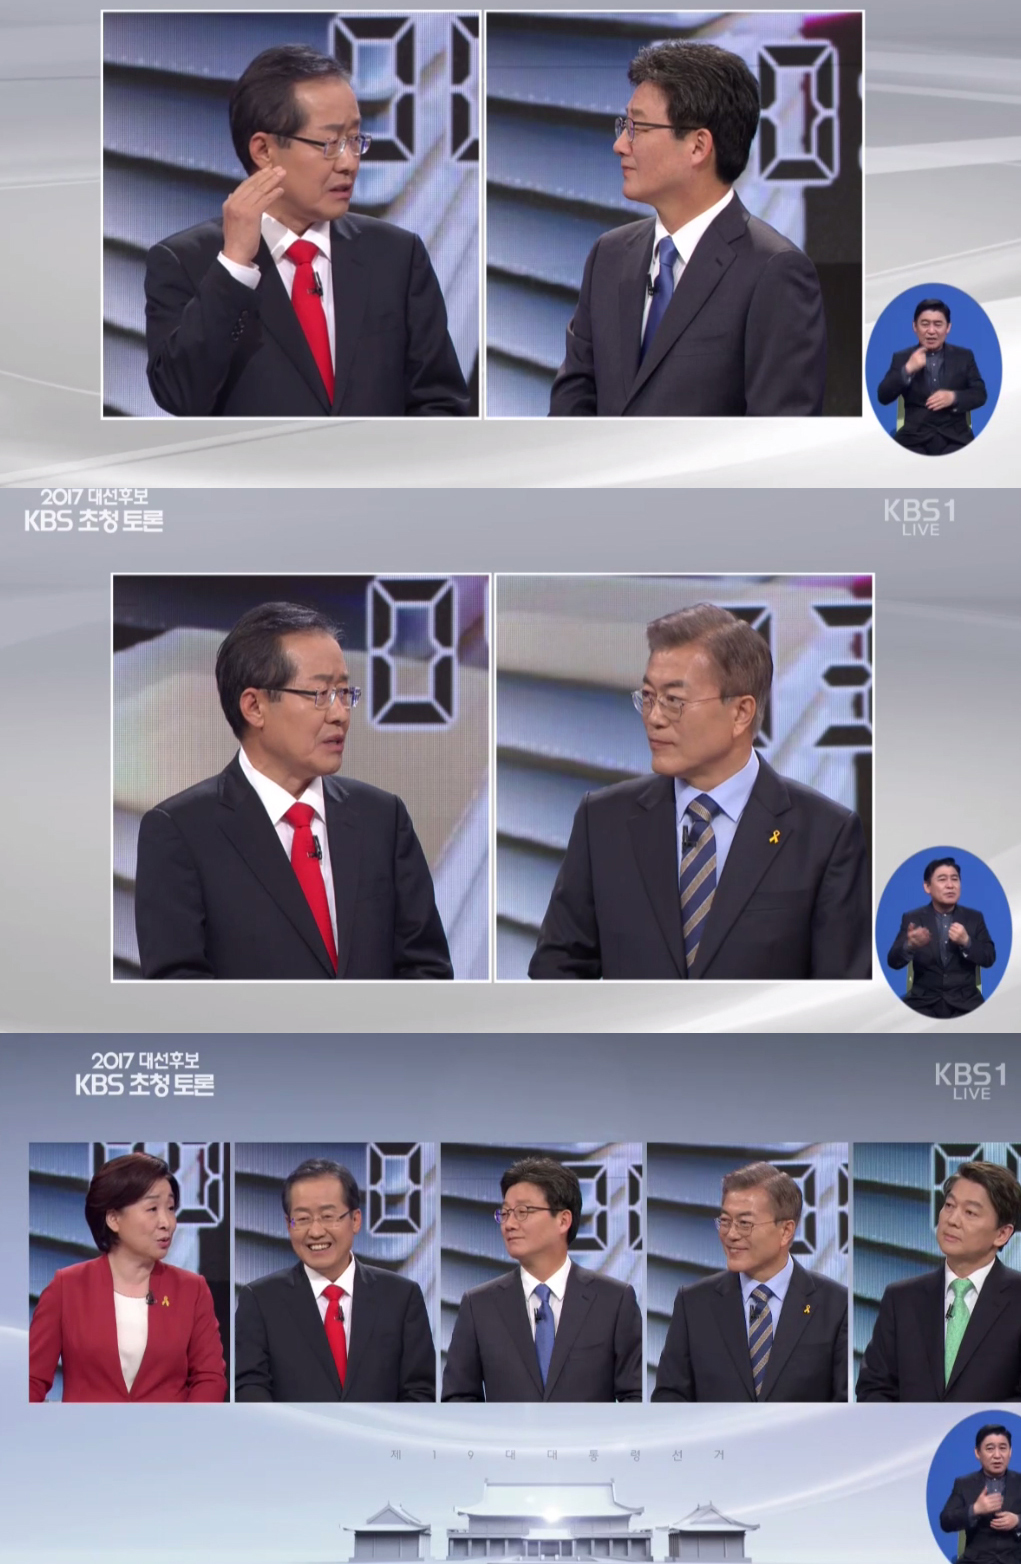 KBS 대선토론에 참가한 홍준표 후보는 예능토론을 했다